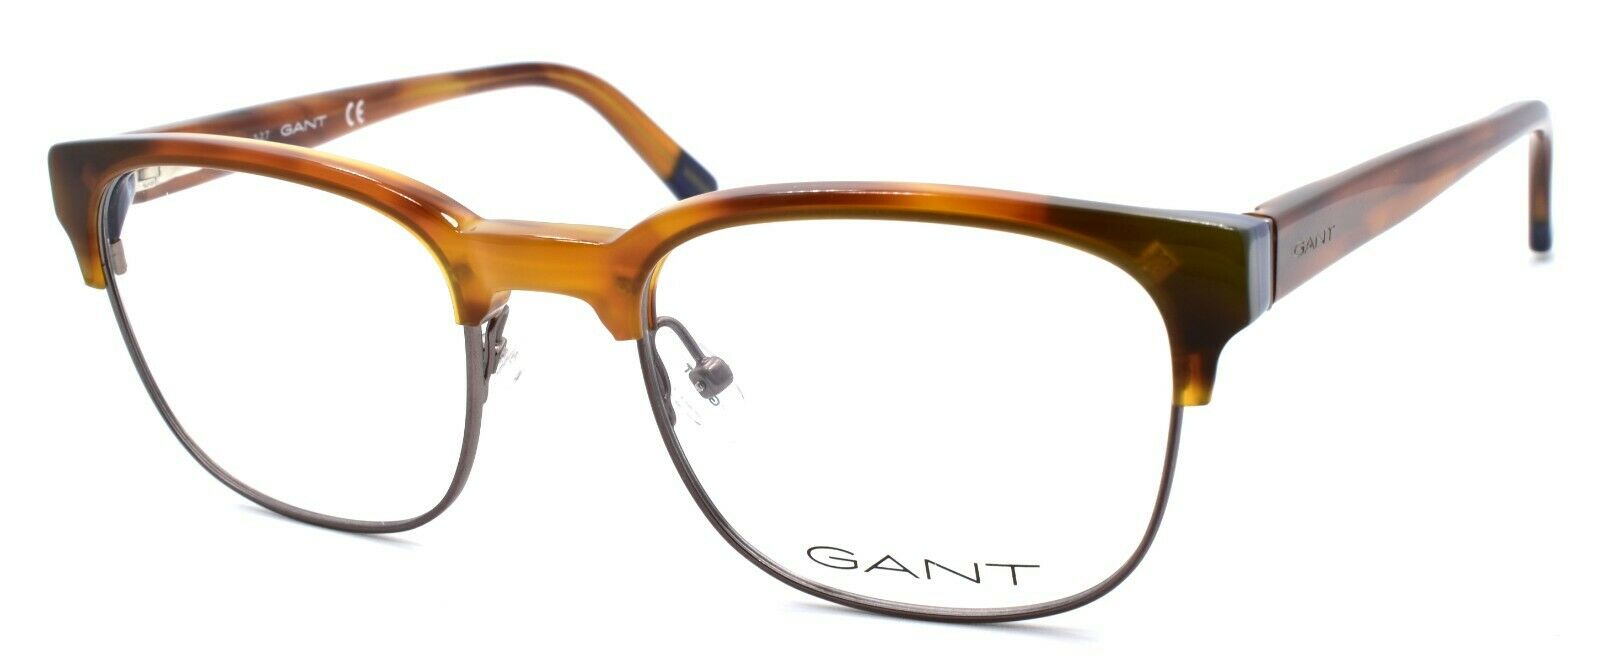 1-GANT GA3176 062 Men's Eyeglasses Frames 51-20-145 Brown Horn-664689951444-IKSpecs